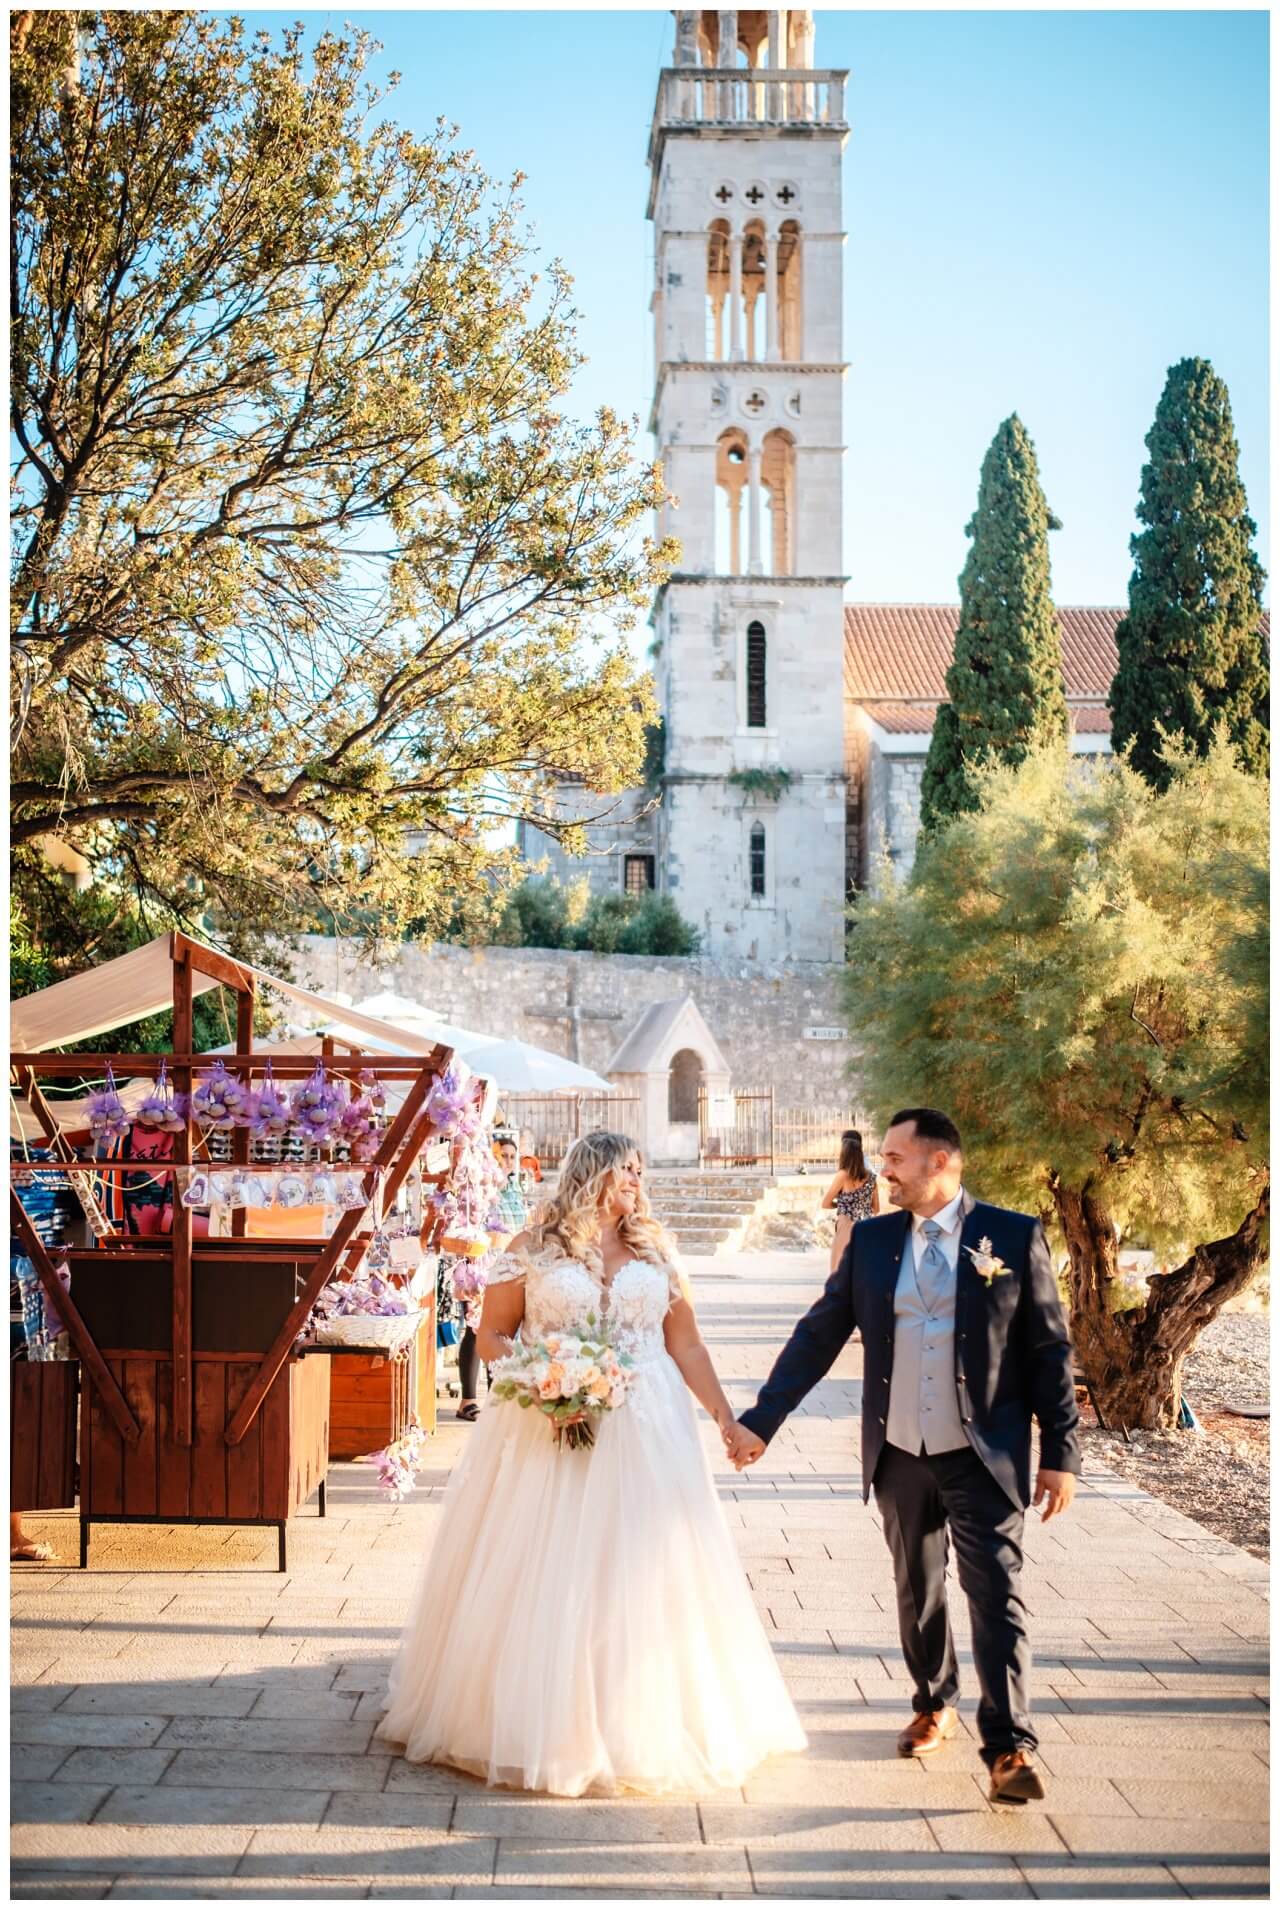 Heiraten Kroatien Insel Hvar Hochzeit Hochzeitsplanerin Weddingplannerin Wedding Kroatien, wedding in croatia,hochzeitsplanerin kroatien, hochzeit in kroatien